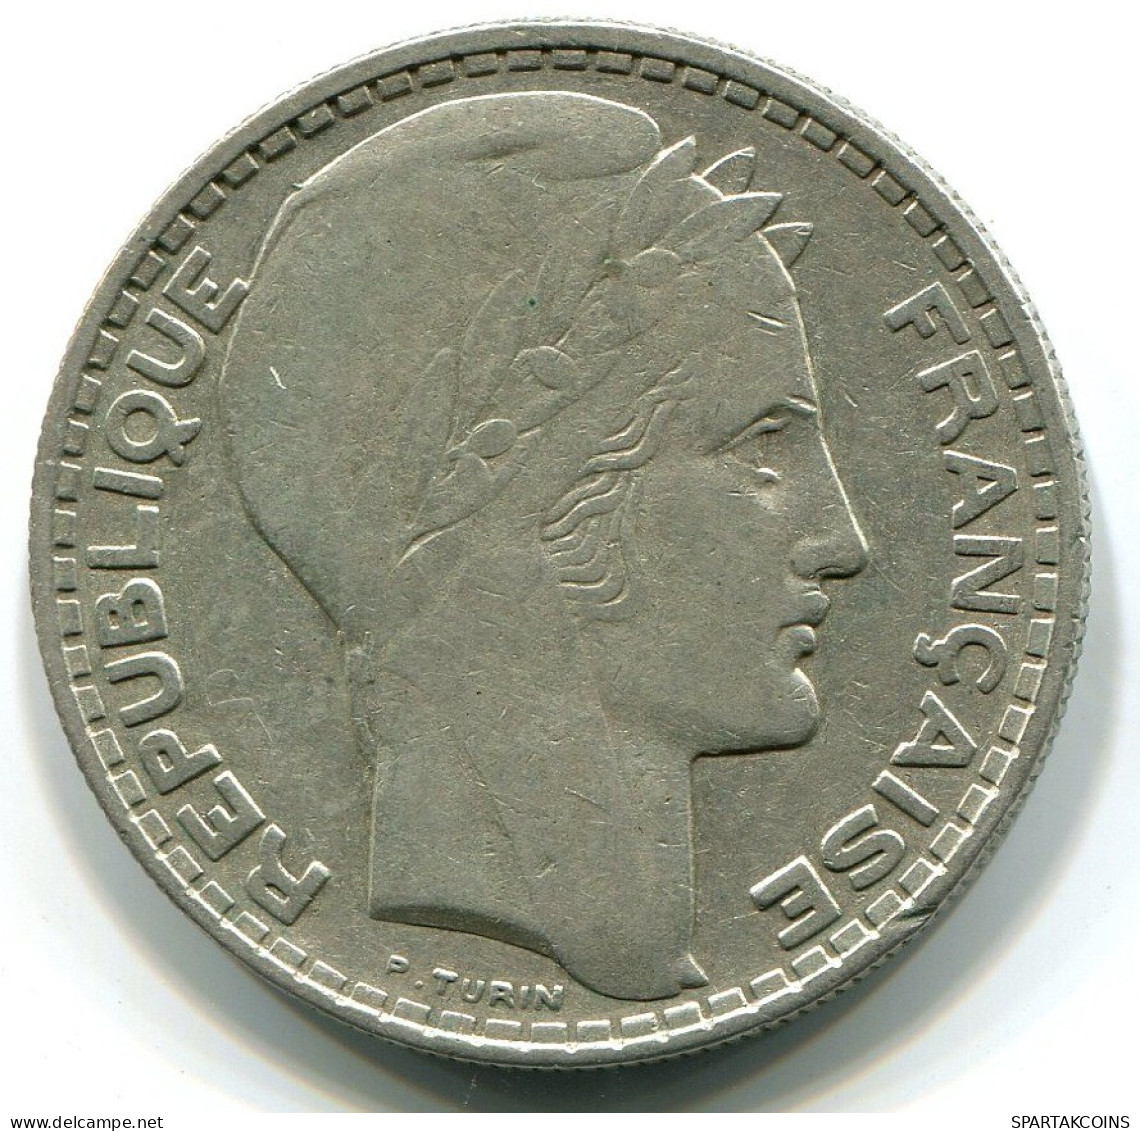 20 FRANCS 1929 FRANCIA FRANCE Moneda PLATA XF #W10506.30.E.A - 20 Francs